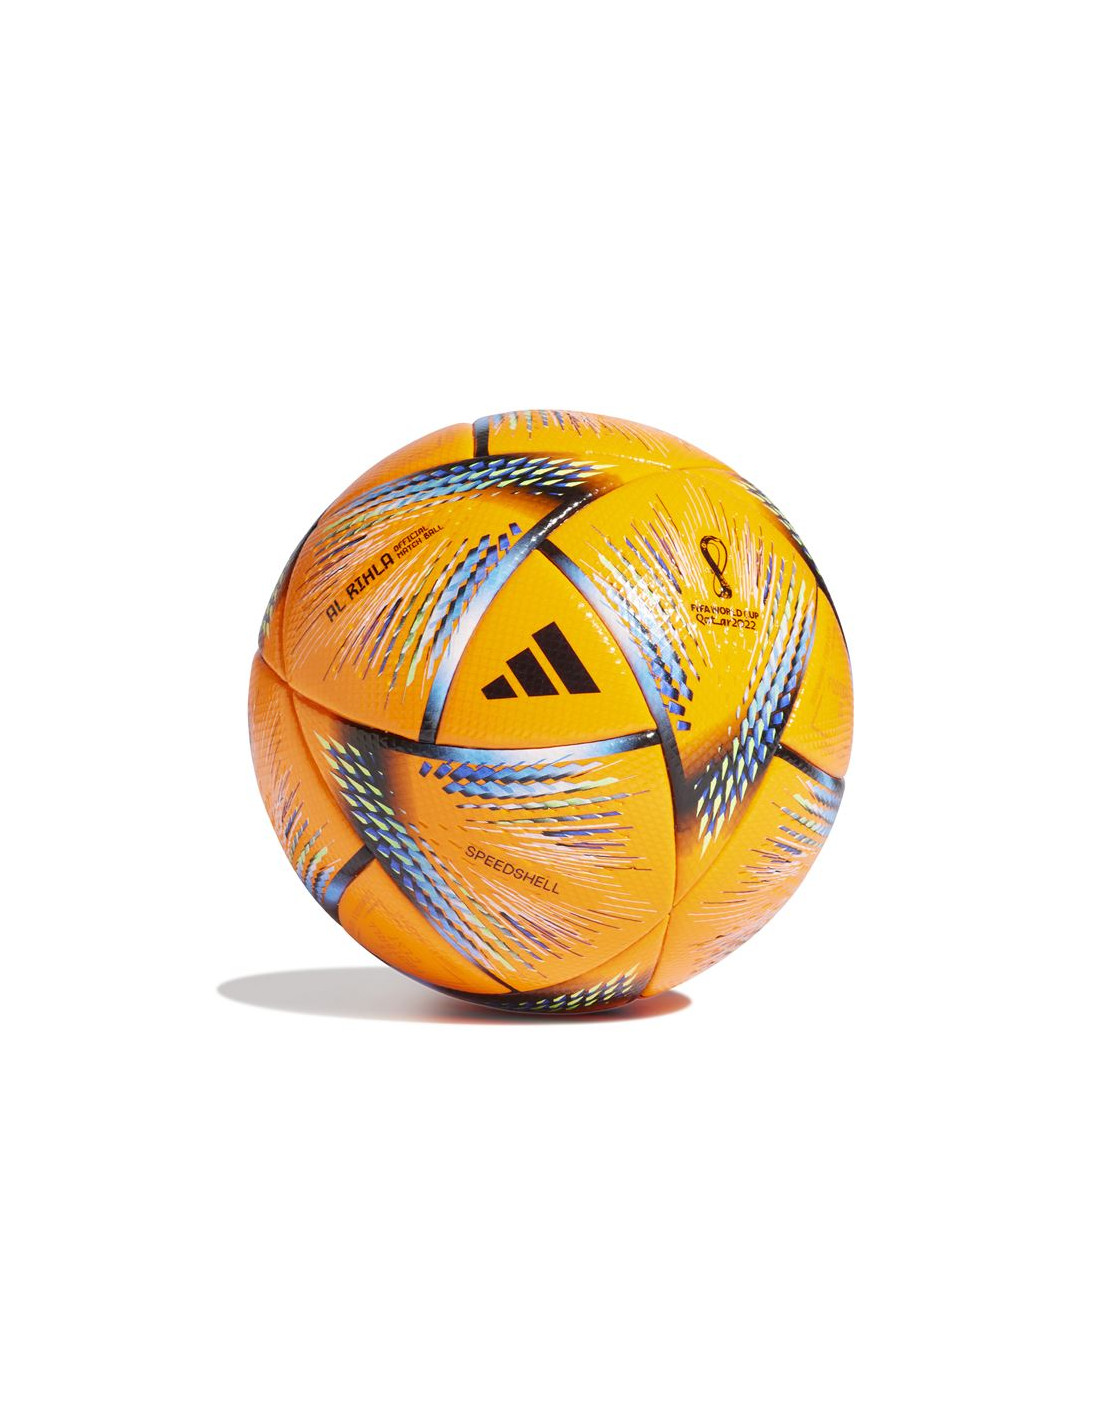 Balón de fútbol adidas al rihla pro winter orange